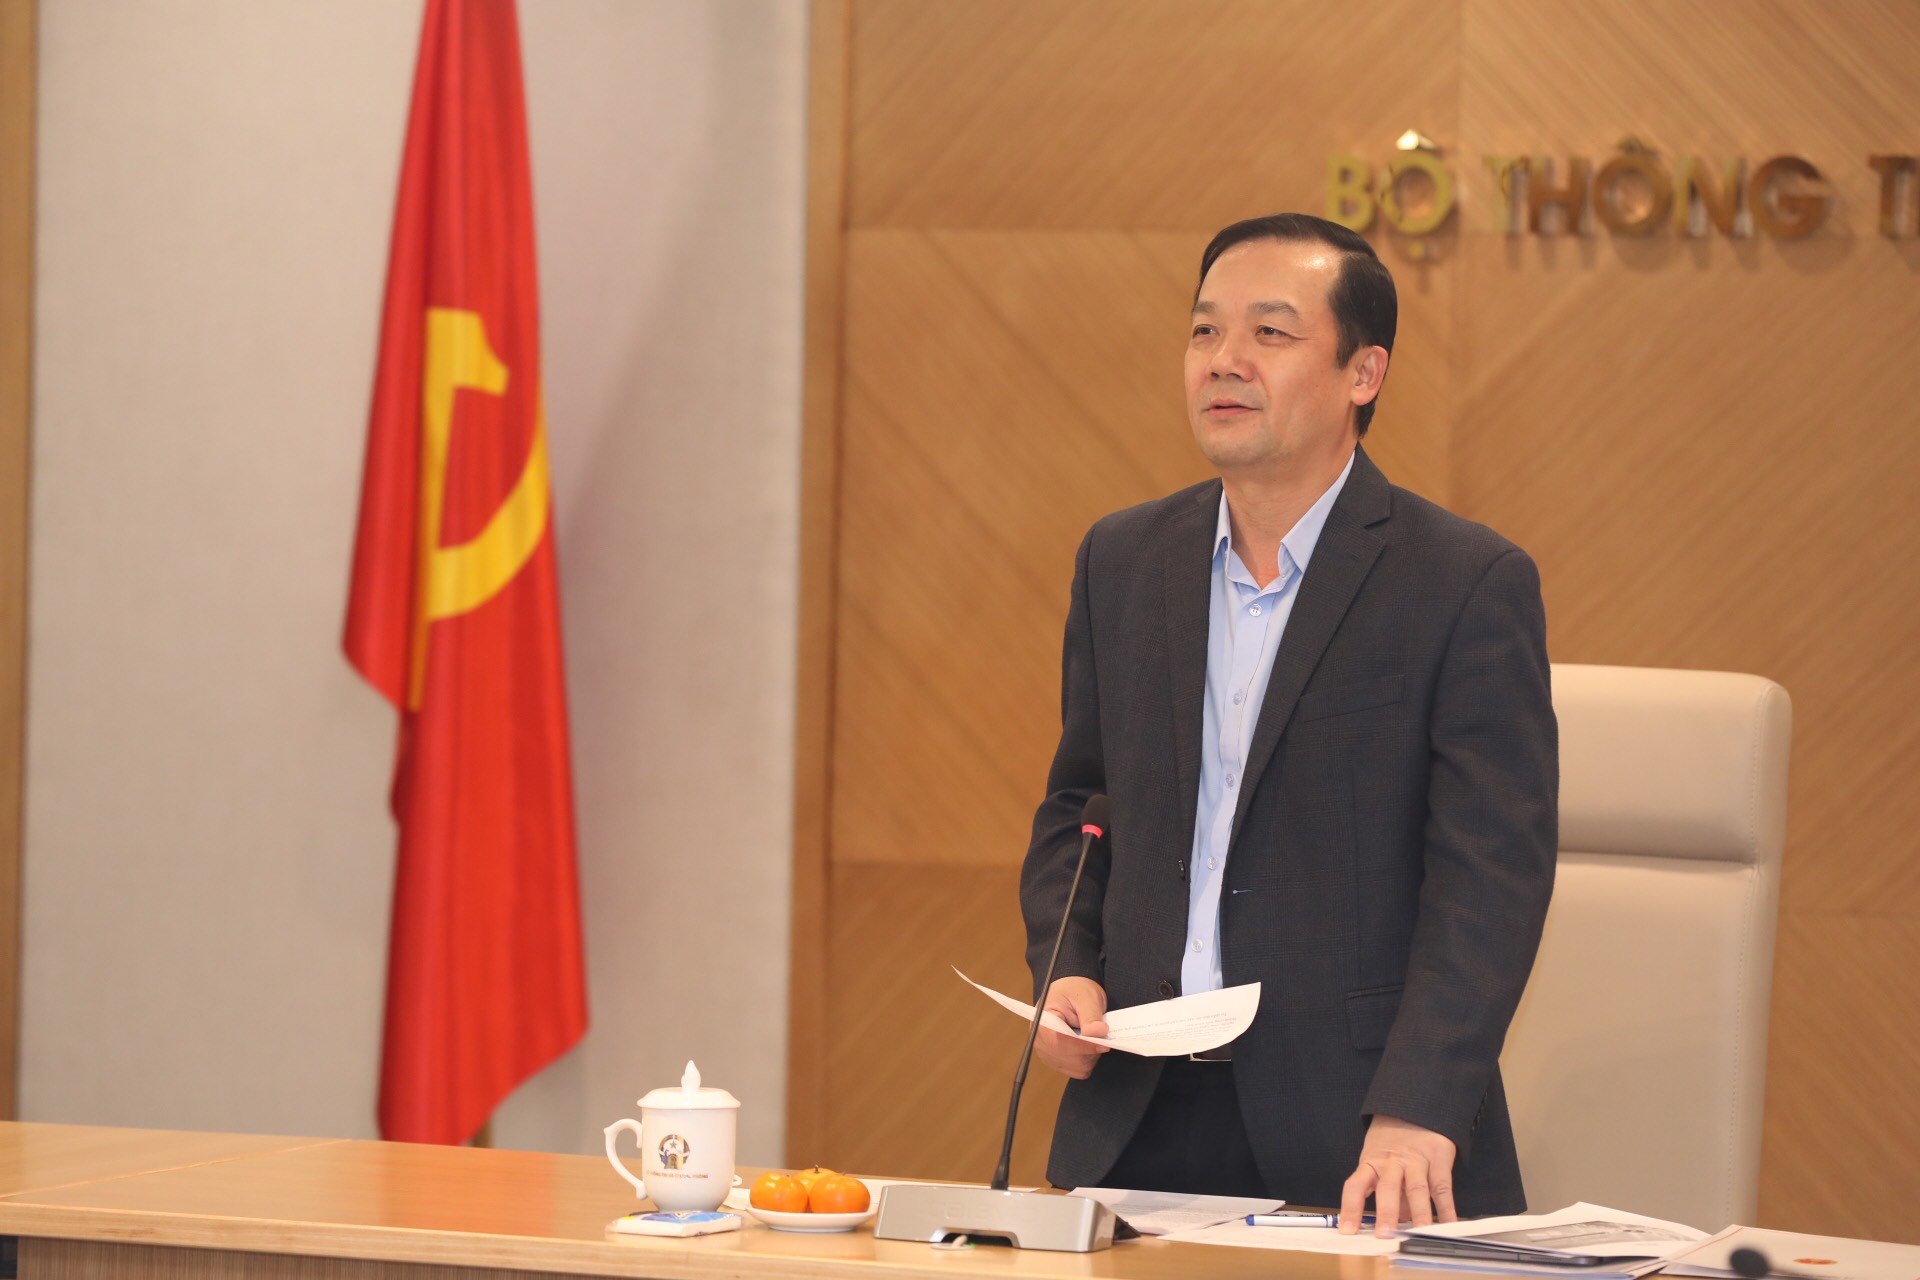 Bộ Thông tin và Truyền thông họp báo về "Diễn đàn Quốc gia Phát triển Doanh nghiệp Công nghệ số Việt Nam lần thứ III" - Ảnh 2.